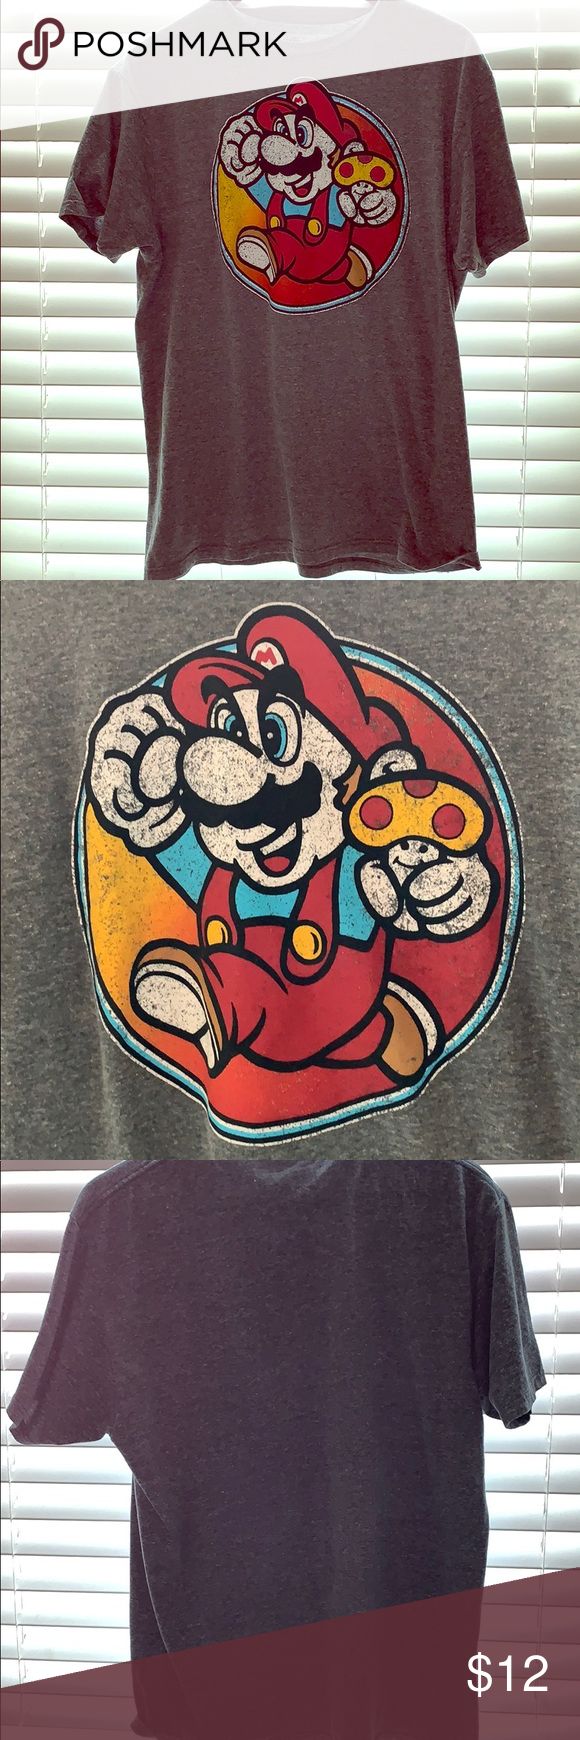 Super-Mario-Bros-T-Shirt-Super-Mario-Bros-T-Shirt-Tops-Tees Super Mario Bros T-Shirt Super Mario Bros T-Shirt Tops Tees - Short Sleeve